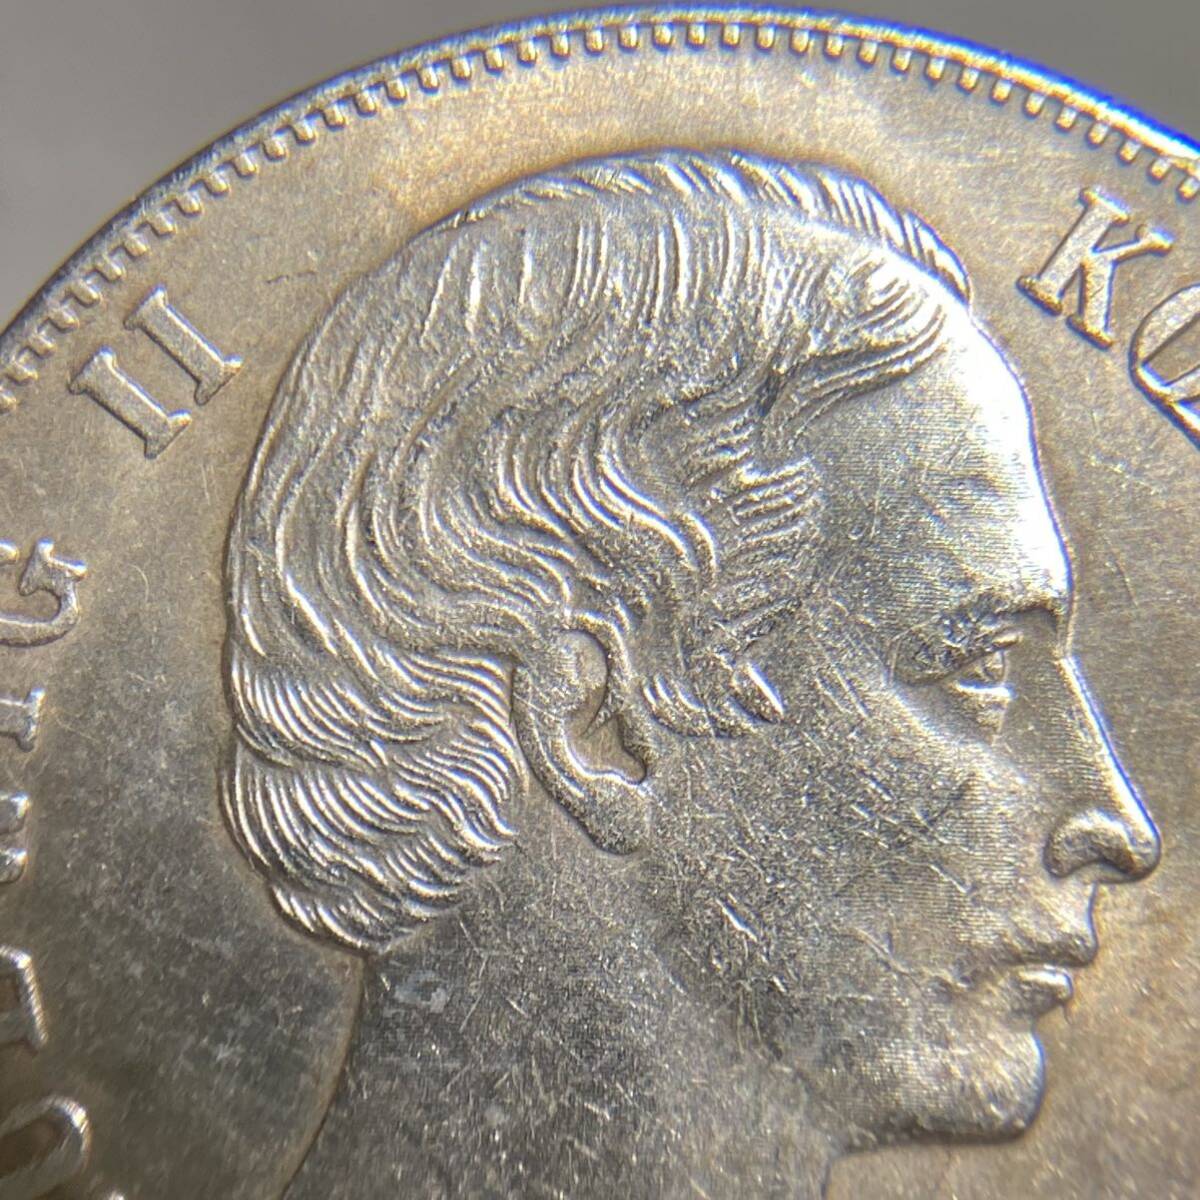 バイエルン古銭 約20.46g ルートヴィヒ2世 cvoigt 一円貨幣 硬貨骨董品コインコレクションの画像3